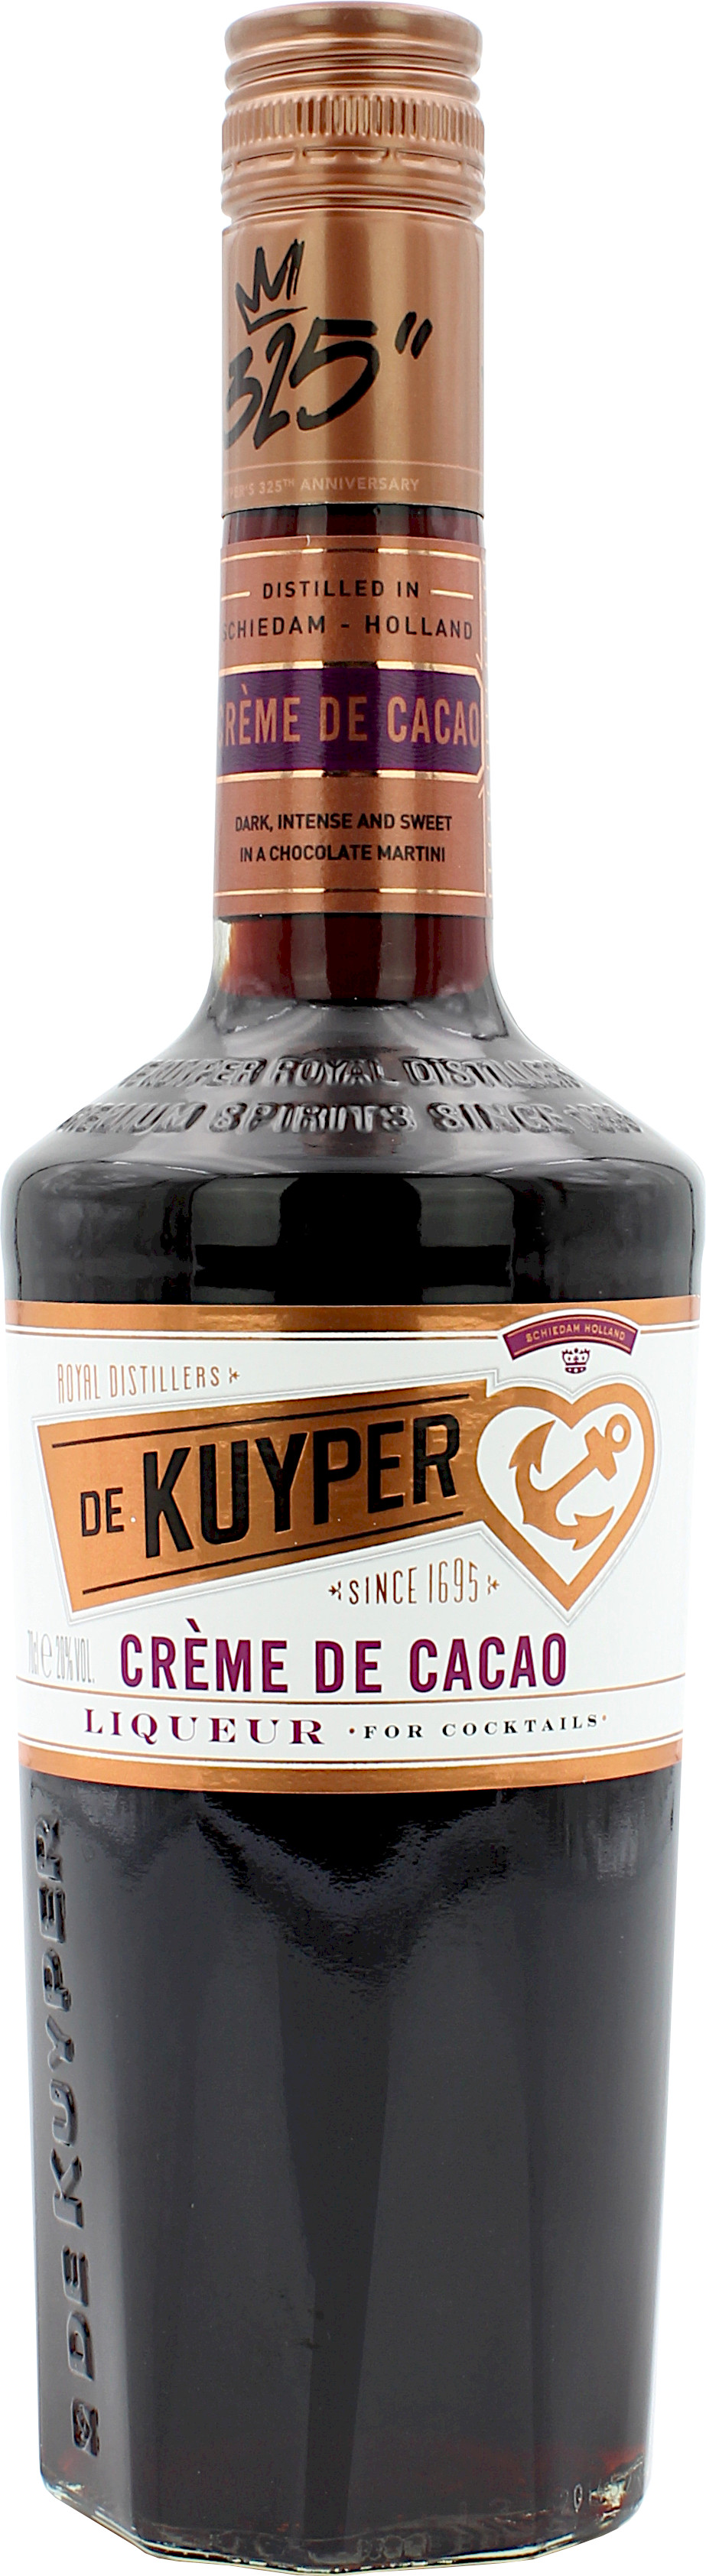 De Kuyper Creme De Cacao 20.0% 0,7l